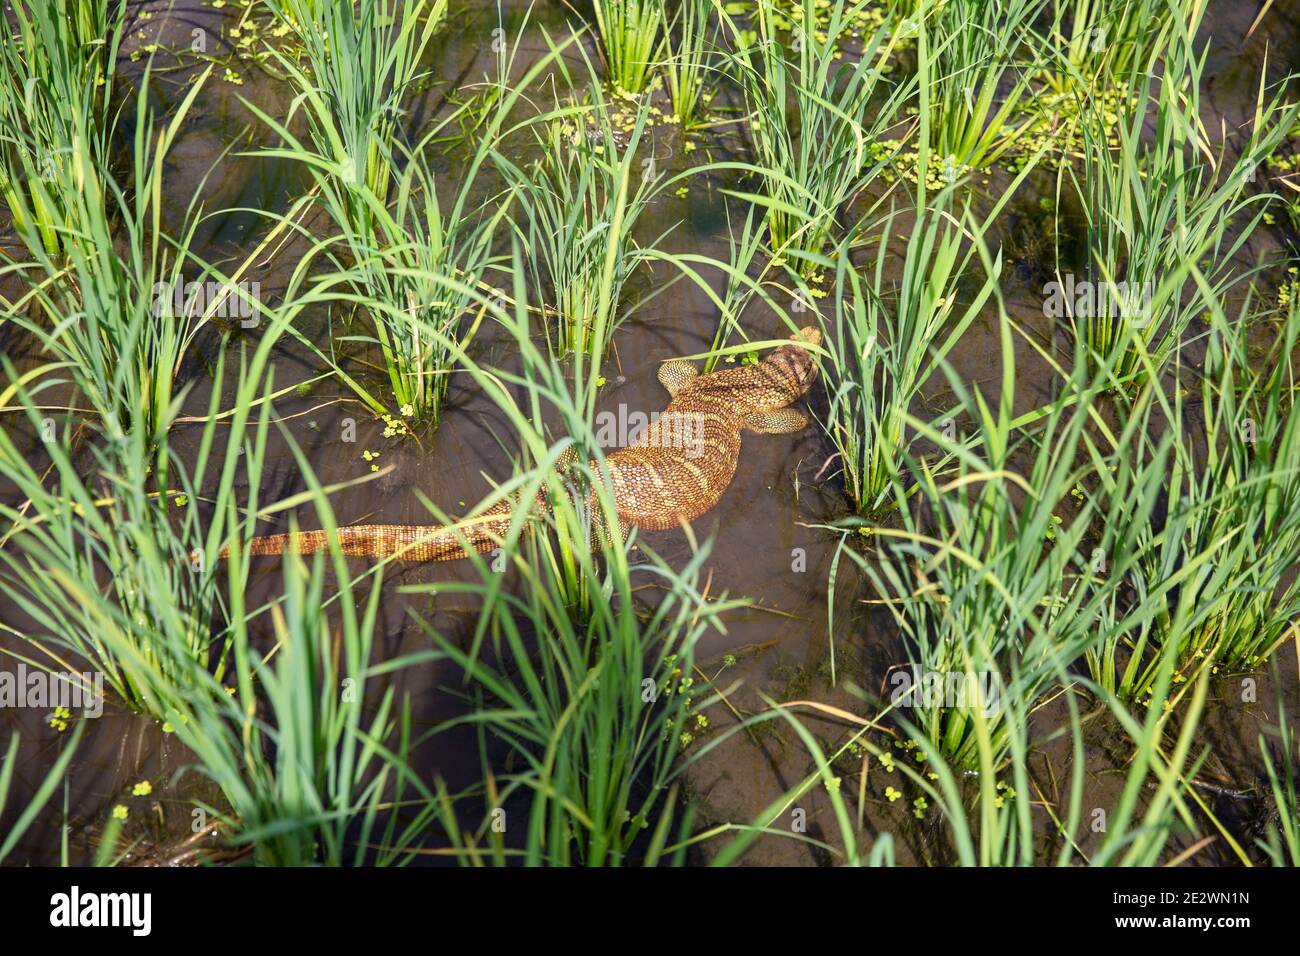 Un lézard mort à l'intérieur d'un champ de paddy à Chandpur, au Bangladesh Banque D'Images